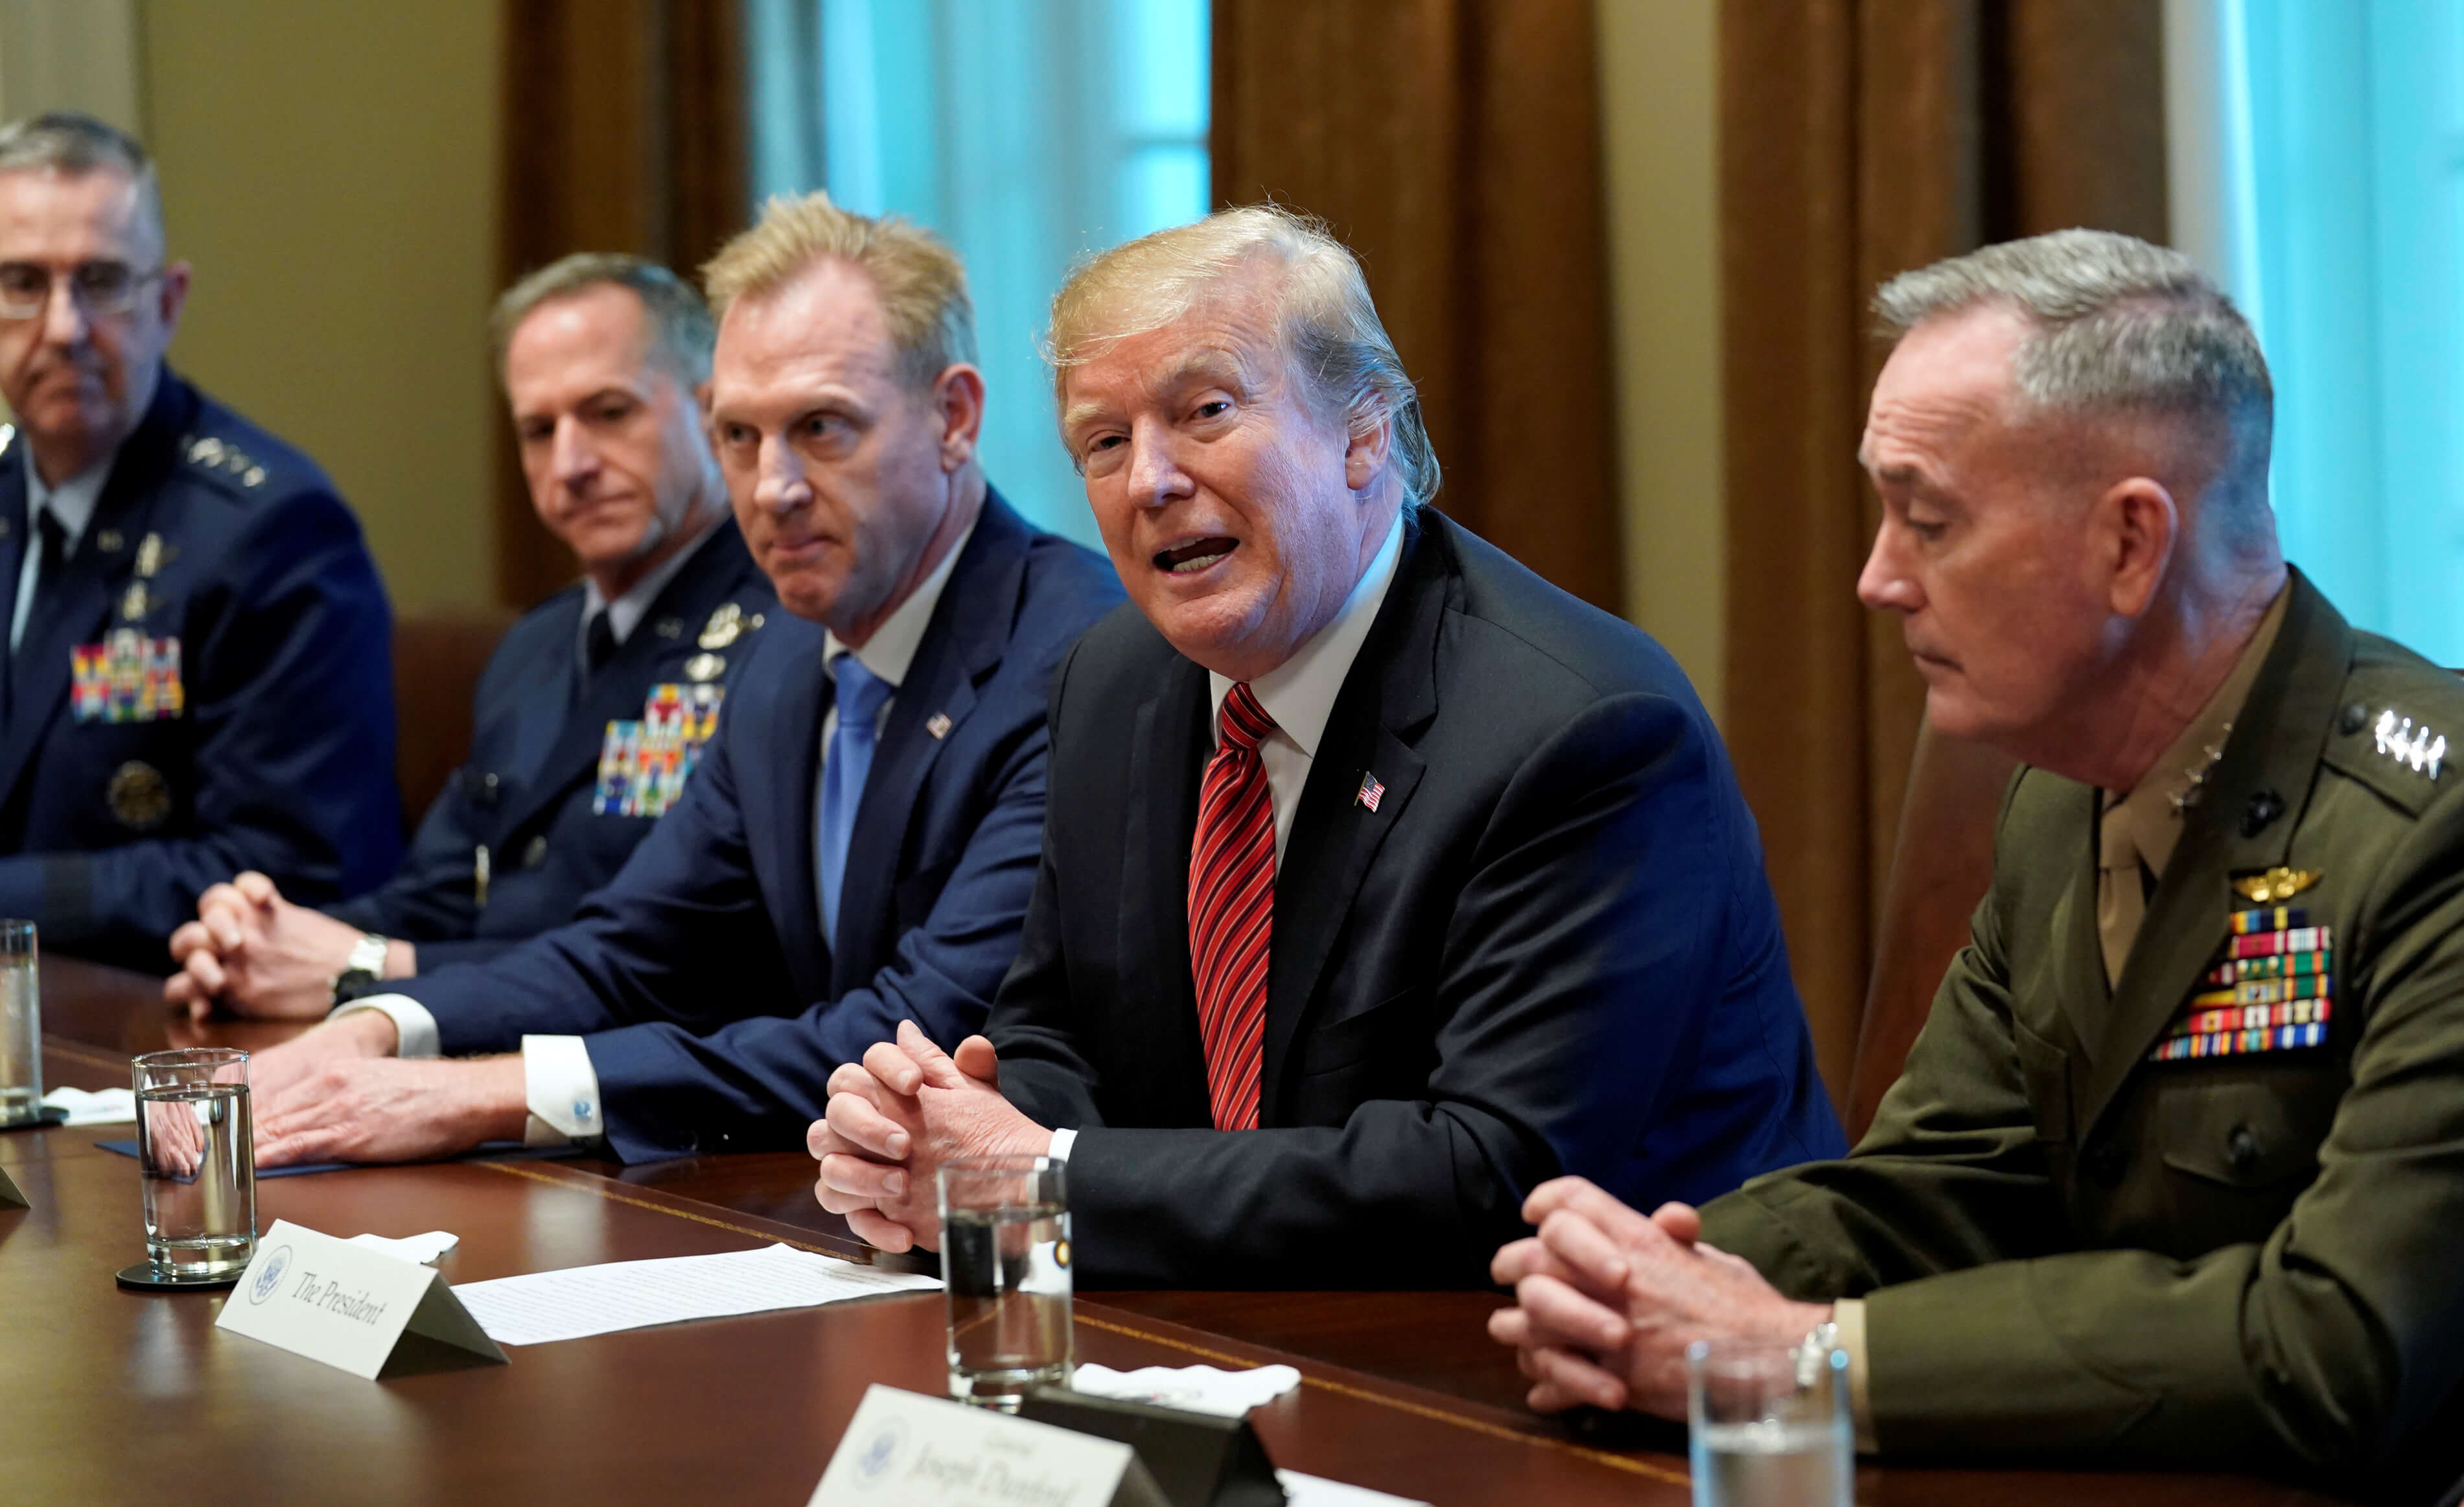 Foto: El presidente de Estados Unidos, Donald Trump, se reúne con funcionarios de seguridad en la Casa Blanca. El 3 de abril de 2019